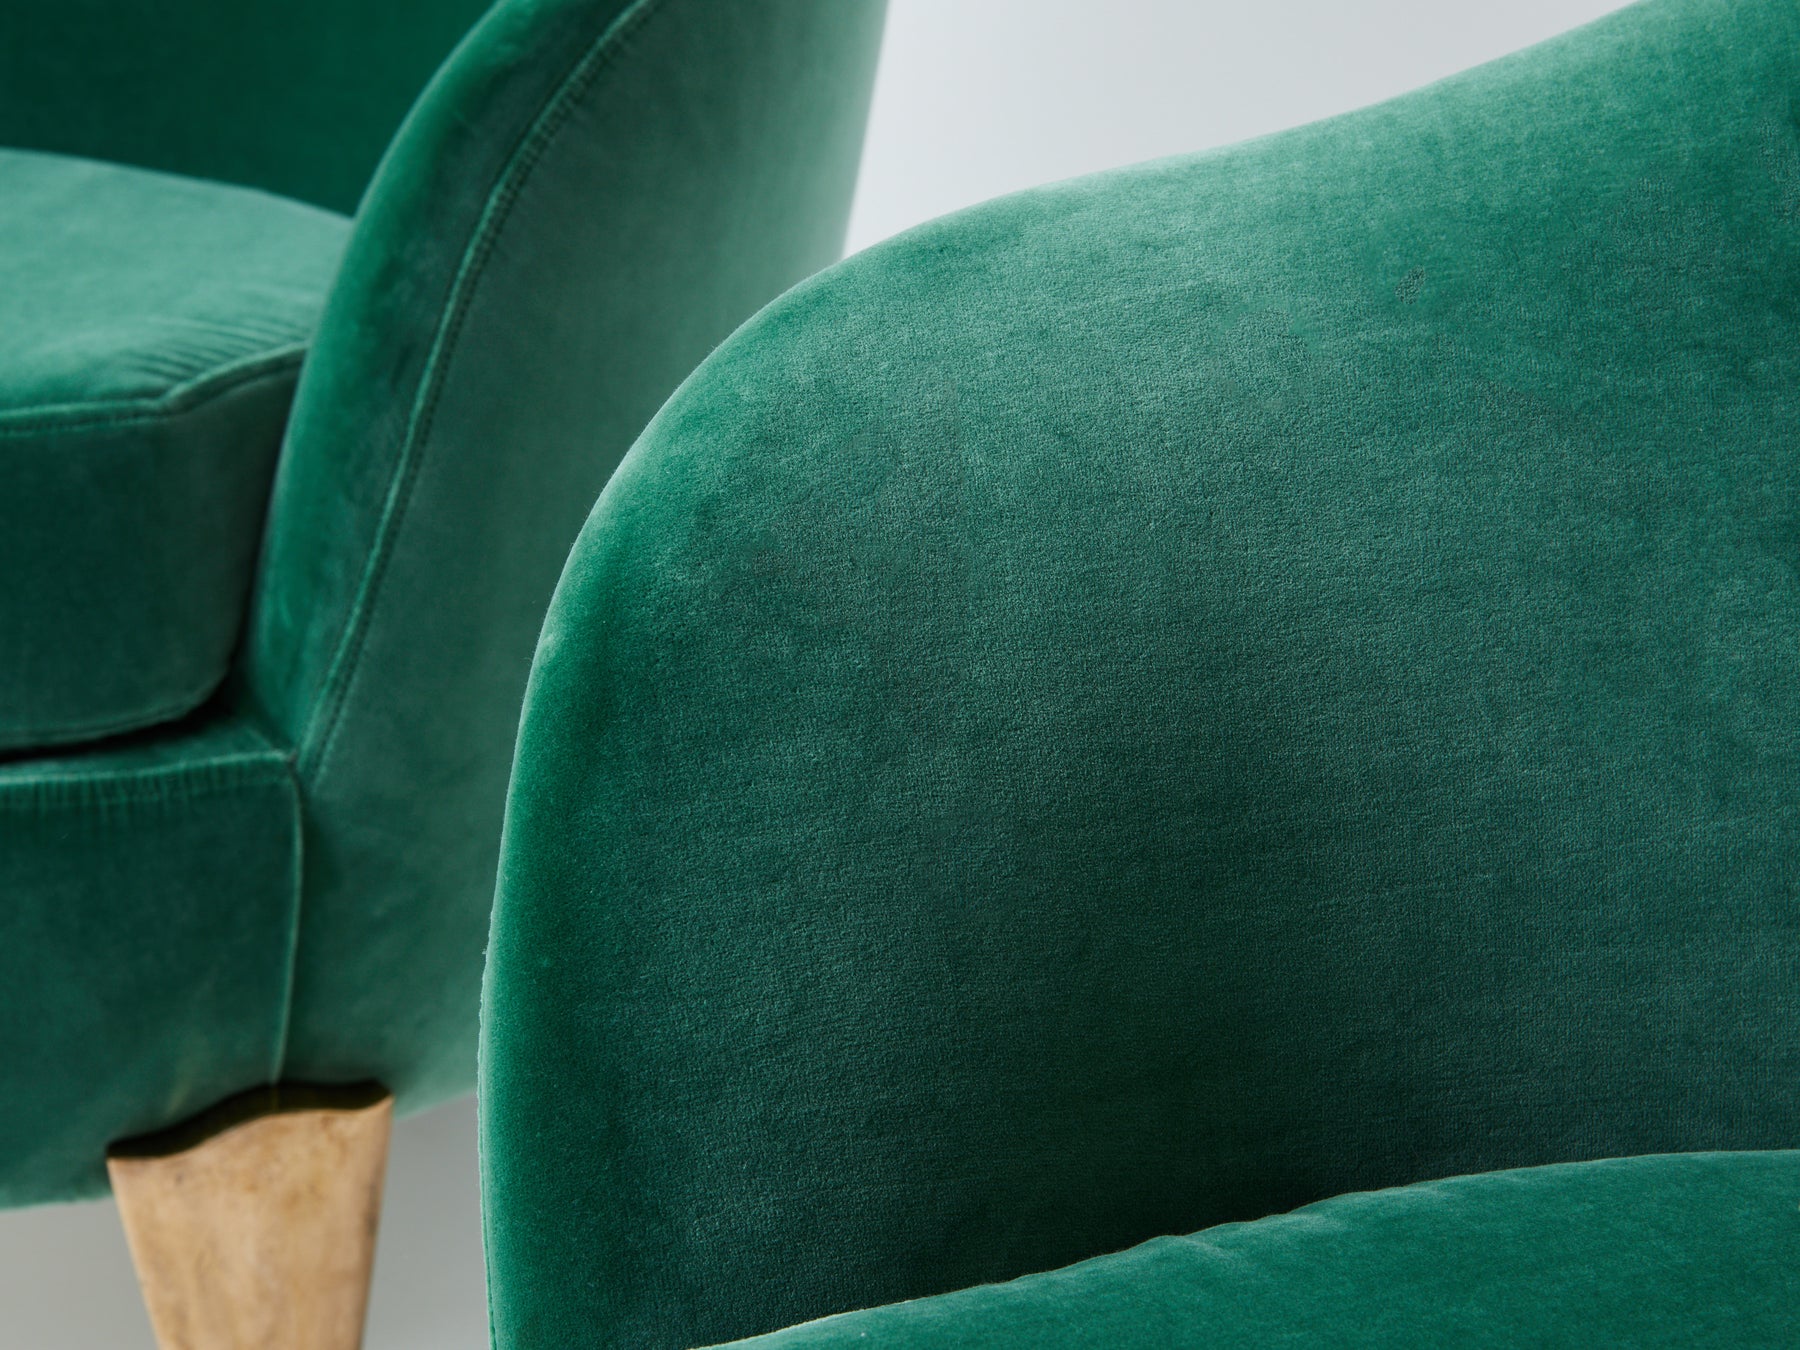 Pair of armchairs Garouste & Bonetti ‘Koala’ bronze green velvet 1995